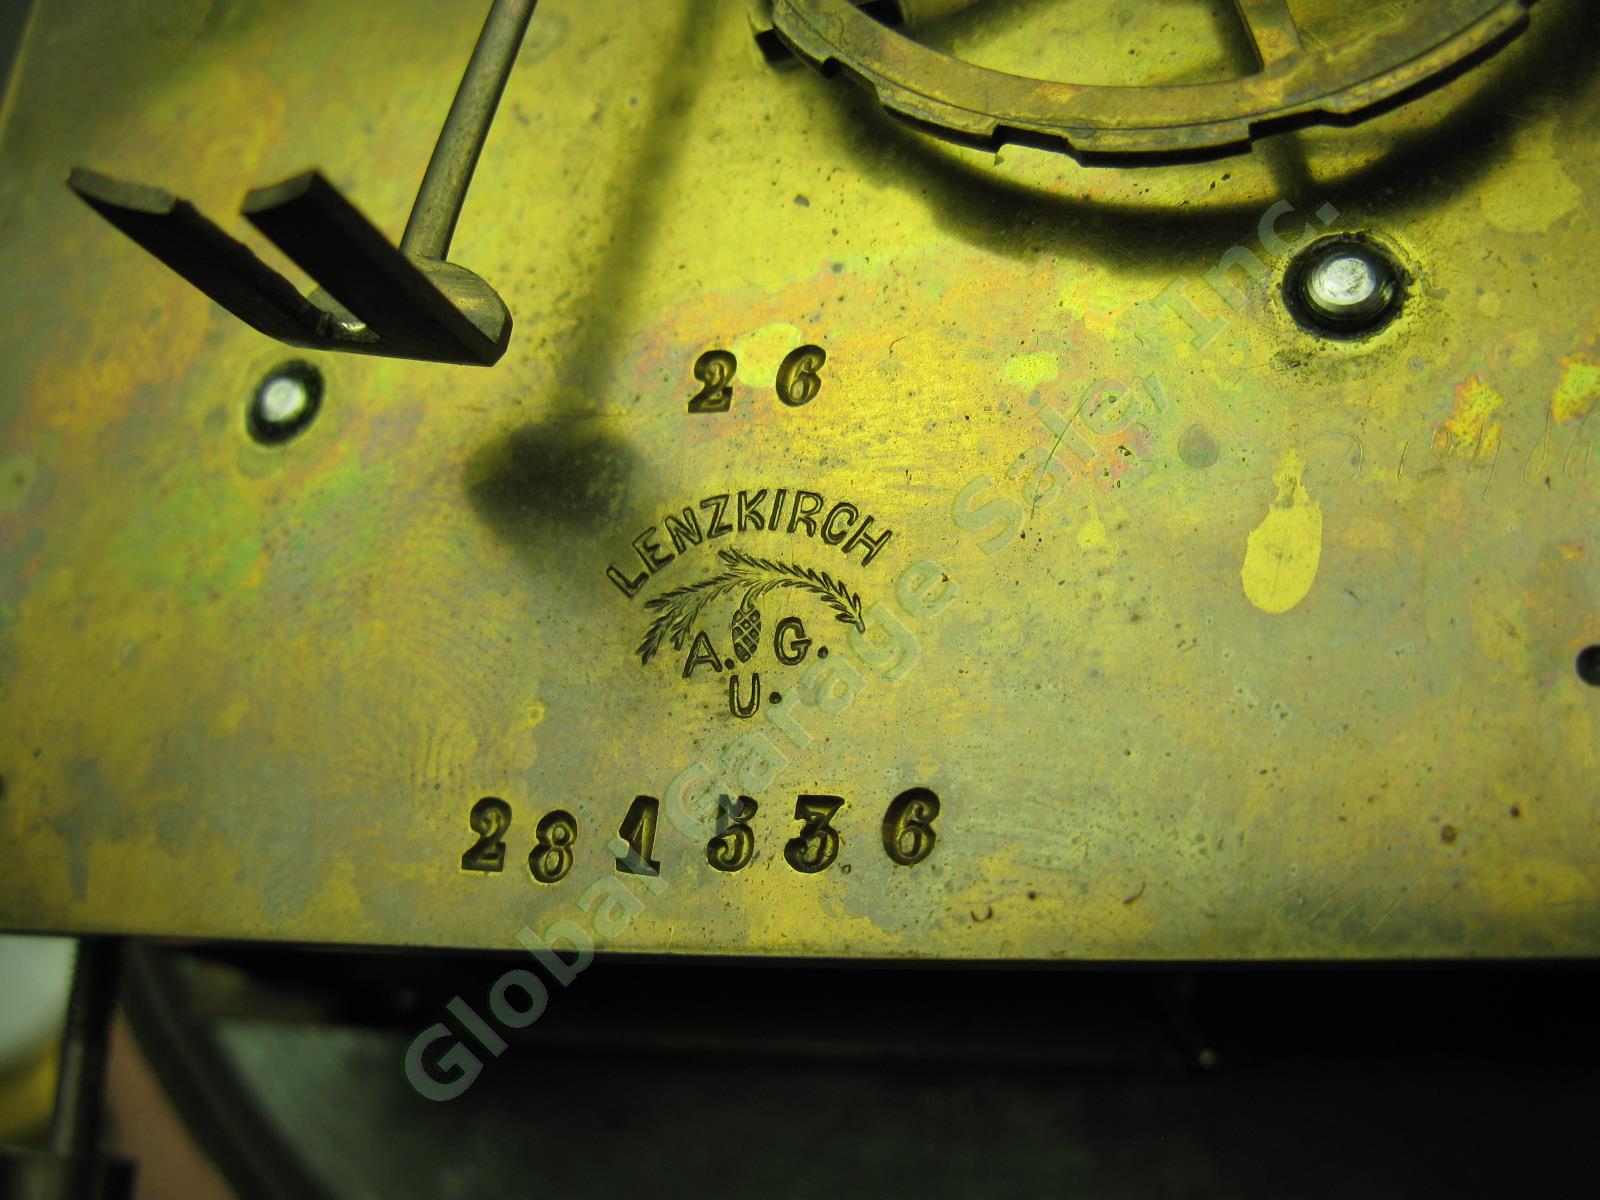 Antique ~1873 Lenzkirch German Pendulum RA Regulator Wall Clock 26 Serial 281536 14